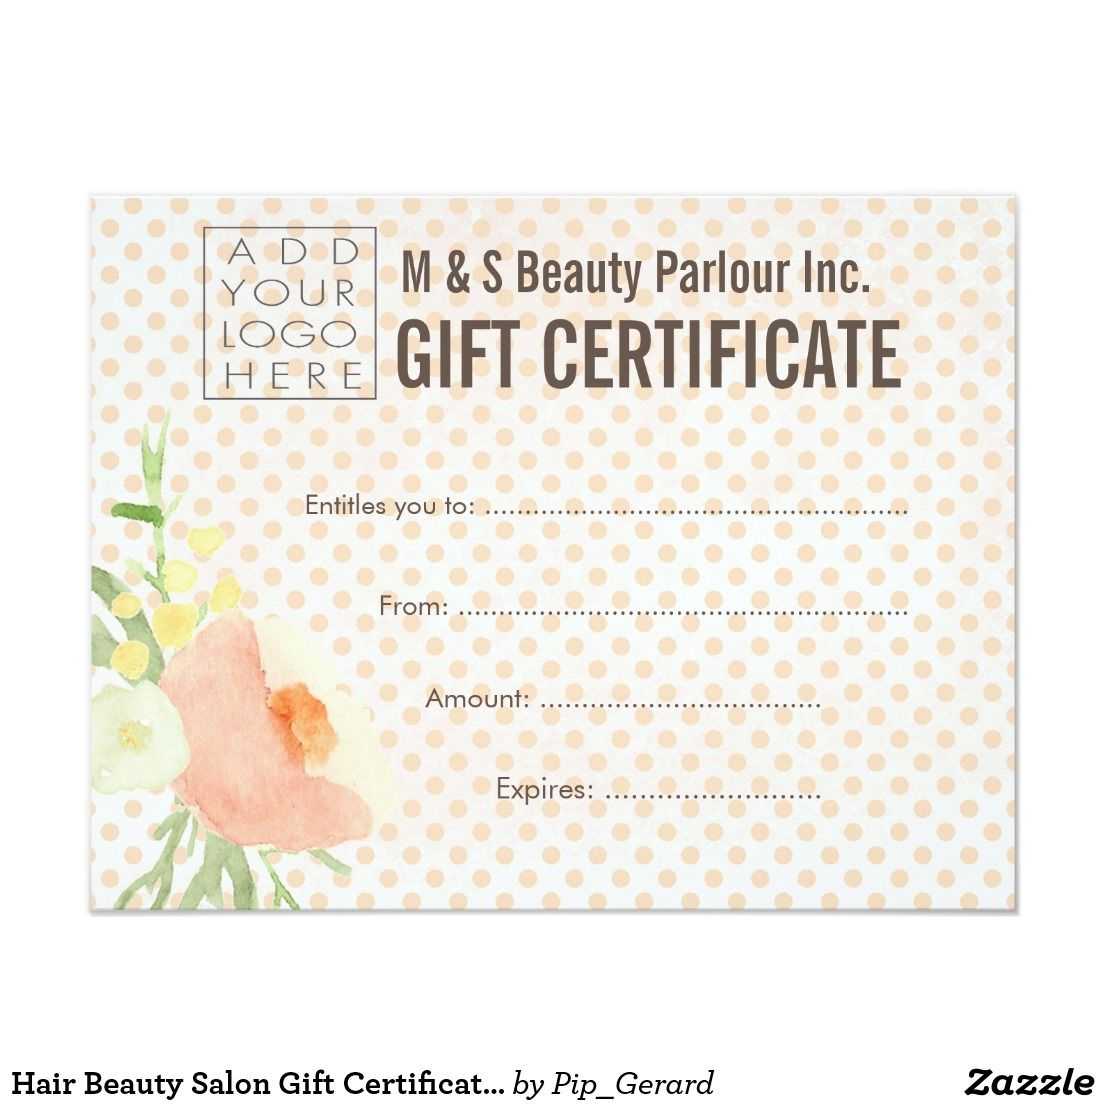 Hair Beauty Salon Gift Certificate Template | Zazzle With Regard To Salon Gift Certificate Template